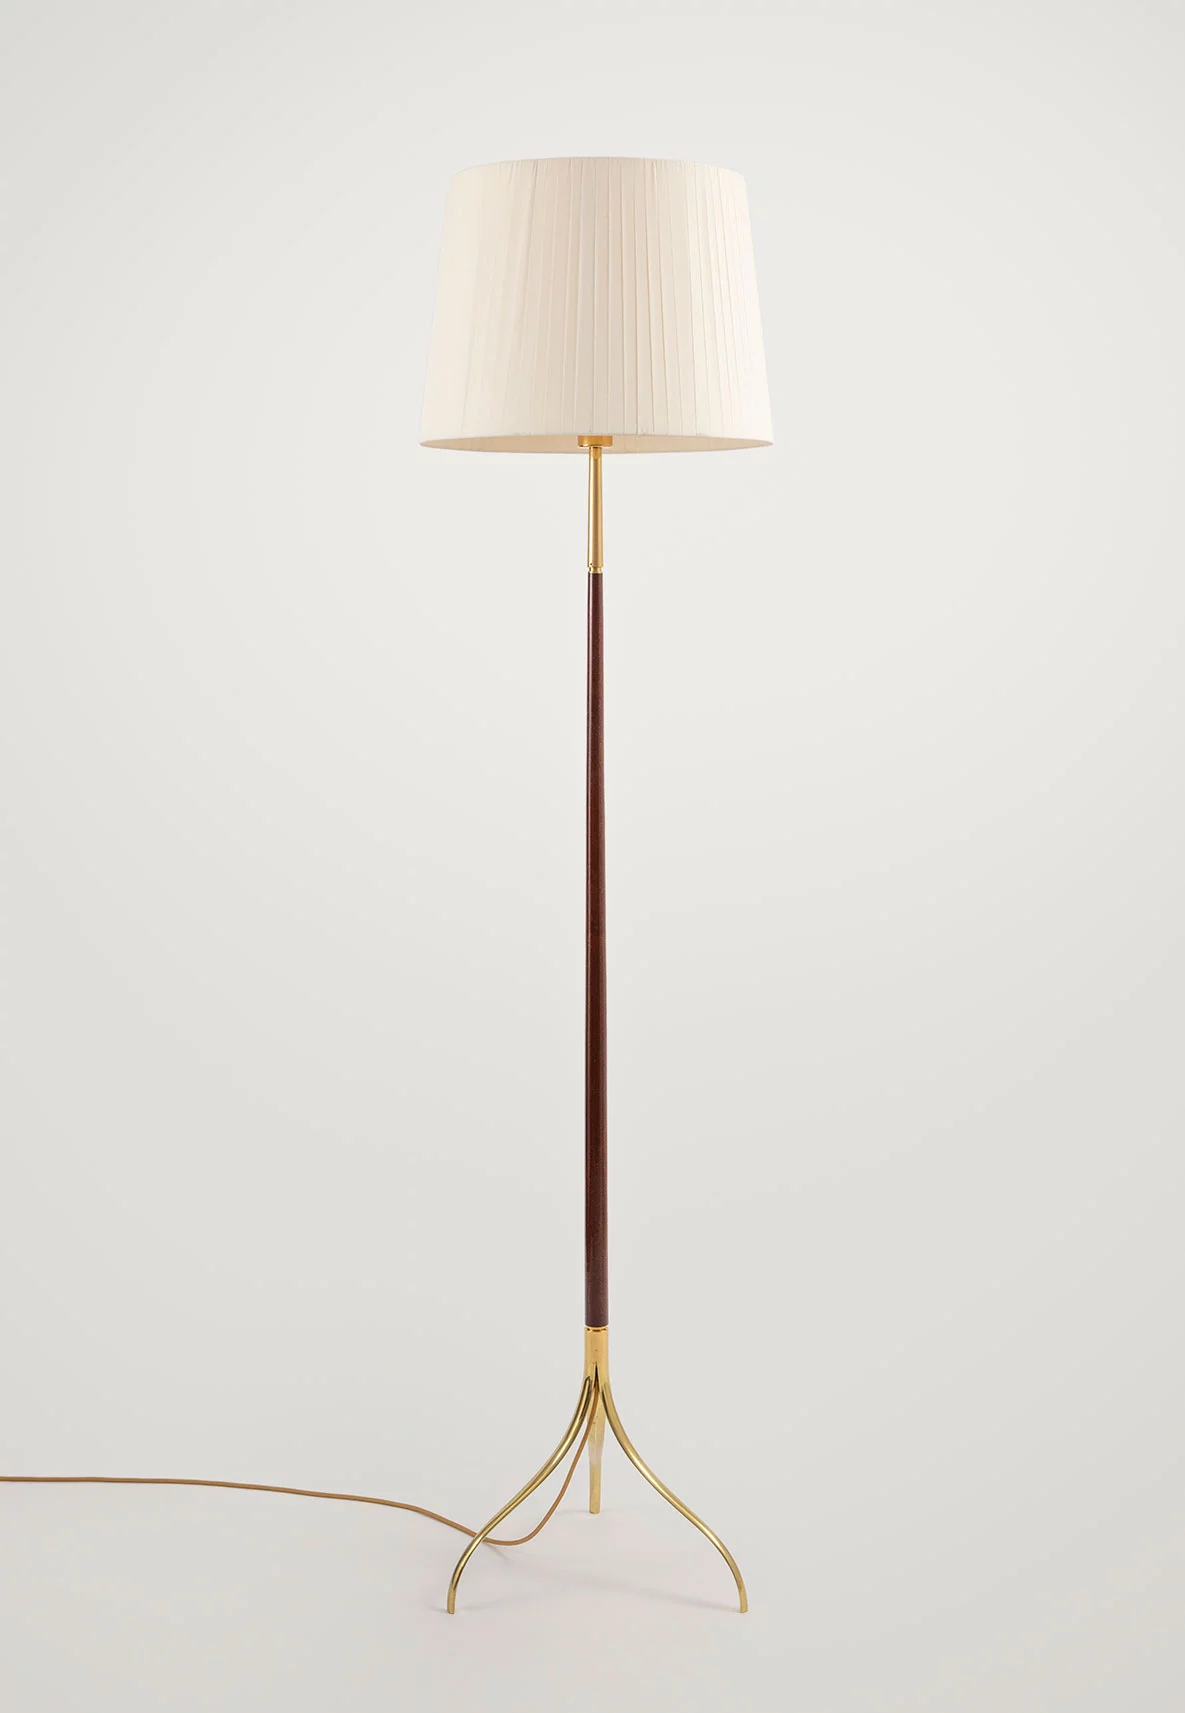 326 - Giuseppe Ostuni - Floor light - Galerie kreo